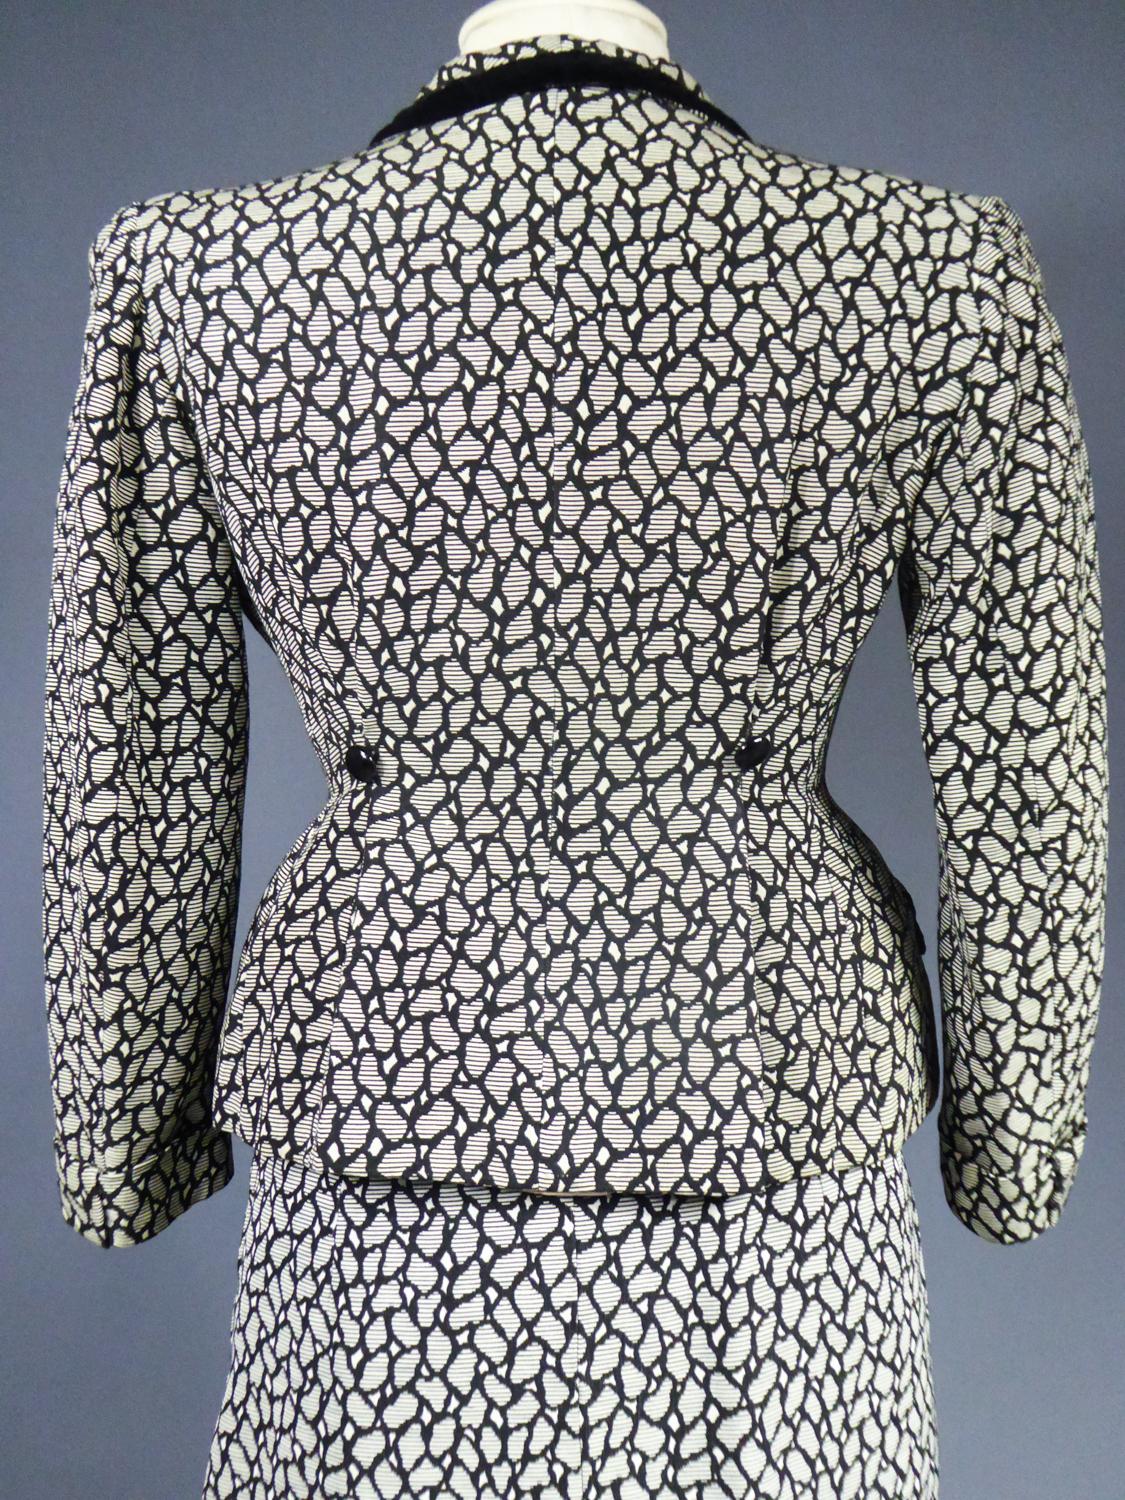 New Look Bar Skirt Suit Circa 1945/1950 7